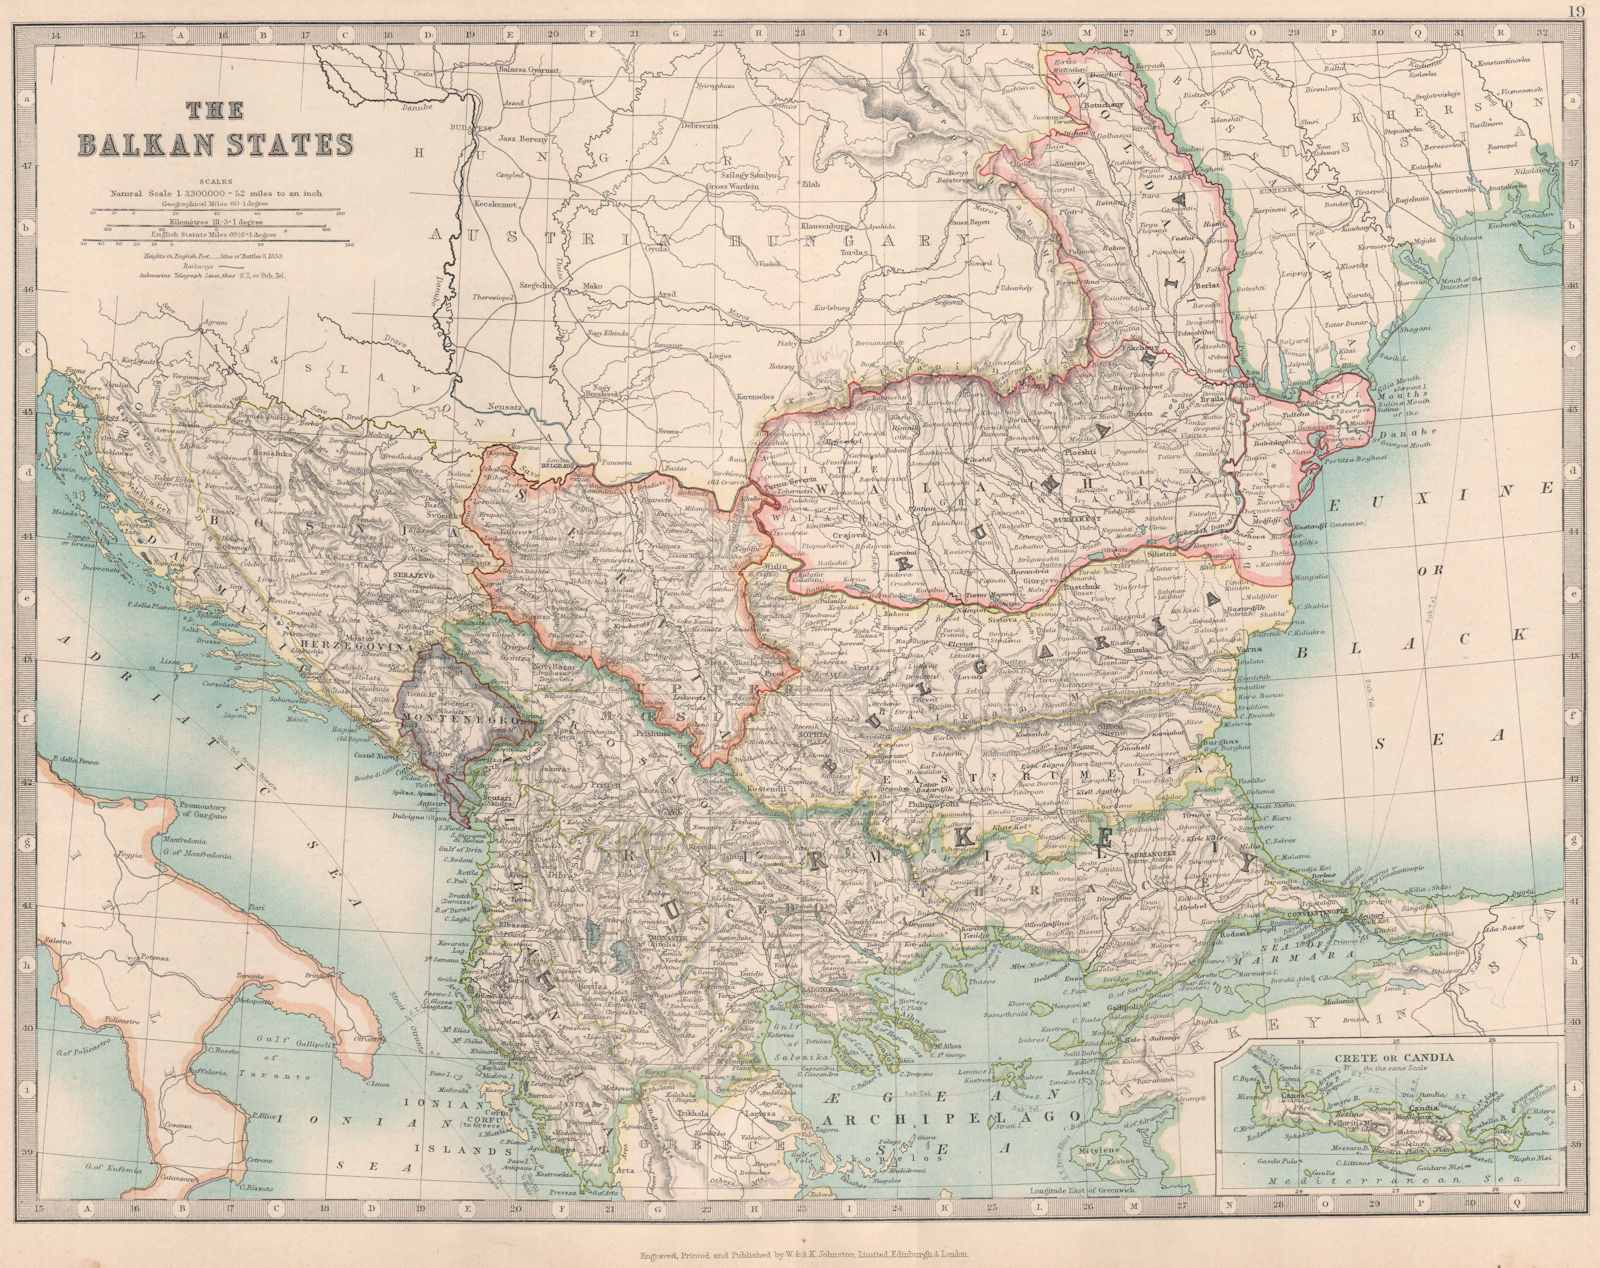 BALKAN STATES. Eastern Roumelia. Turkish Crete. Bulgaria. JOHNSTON 1912 map